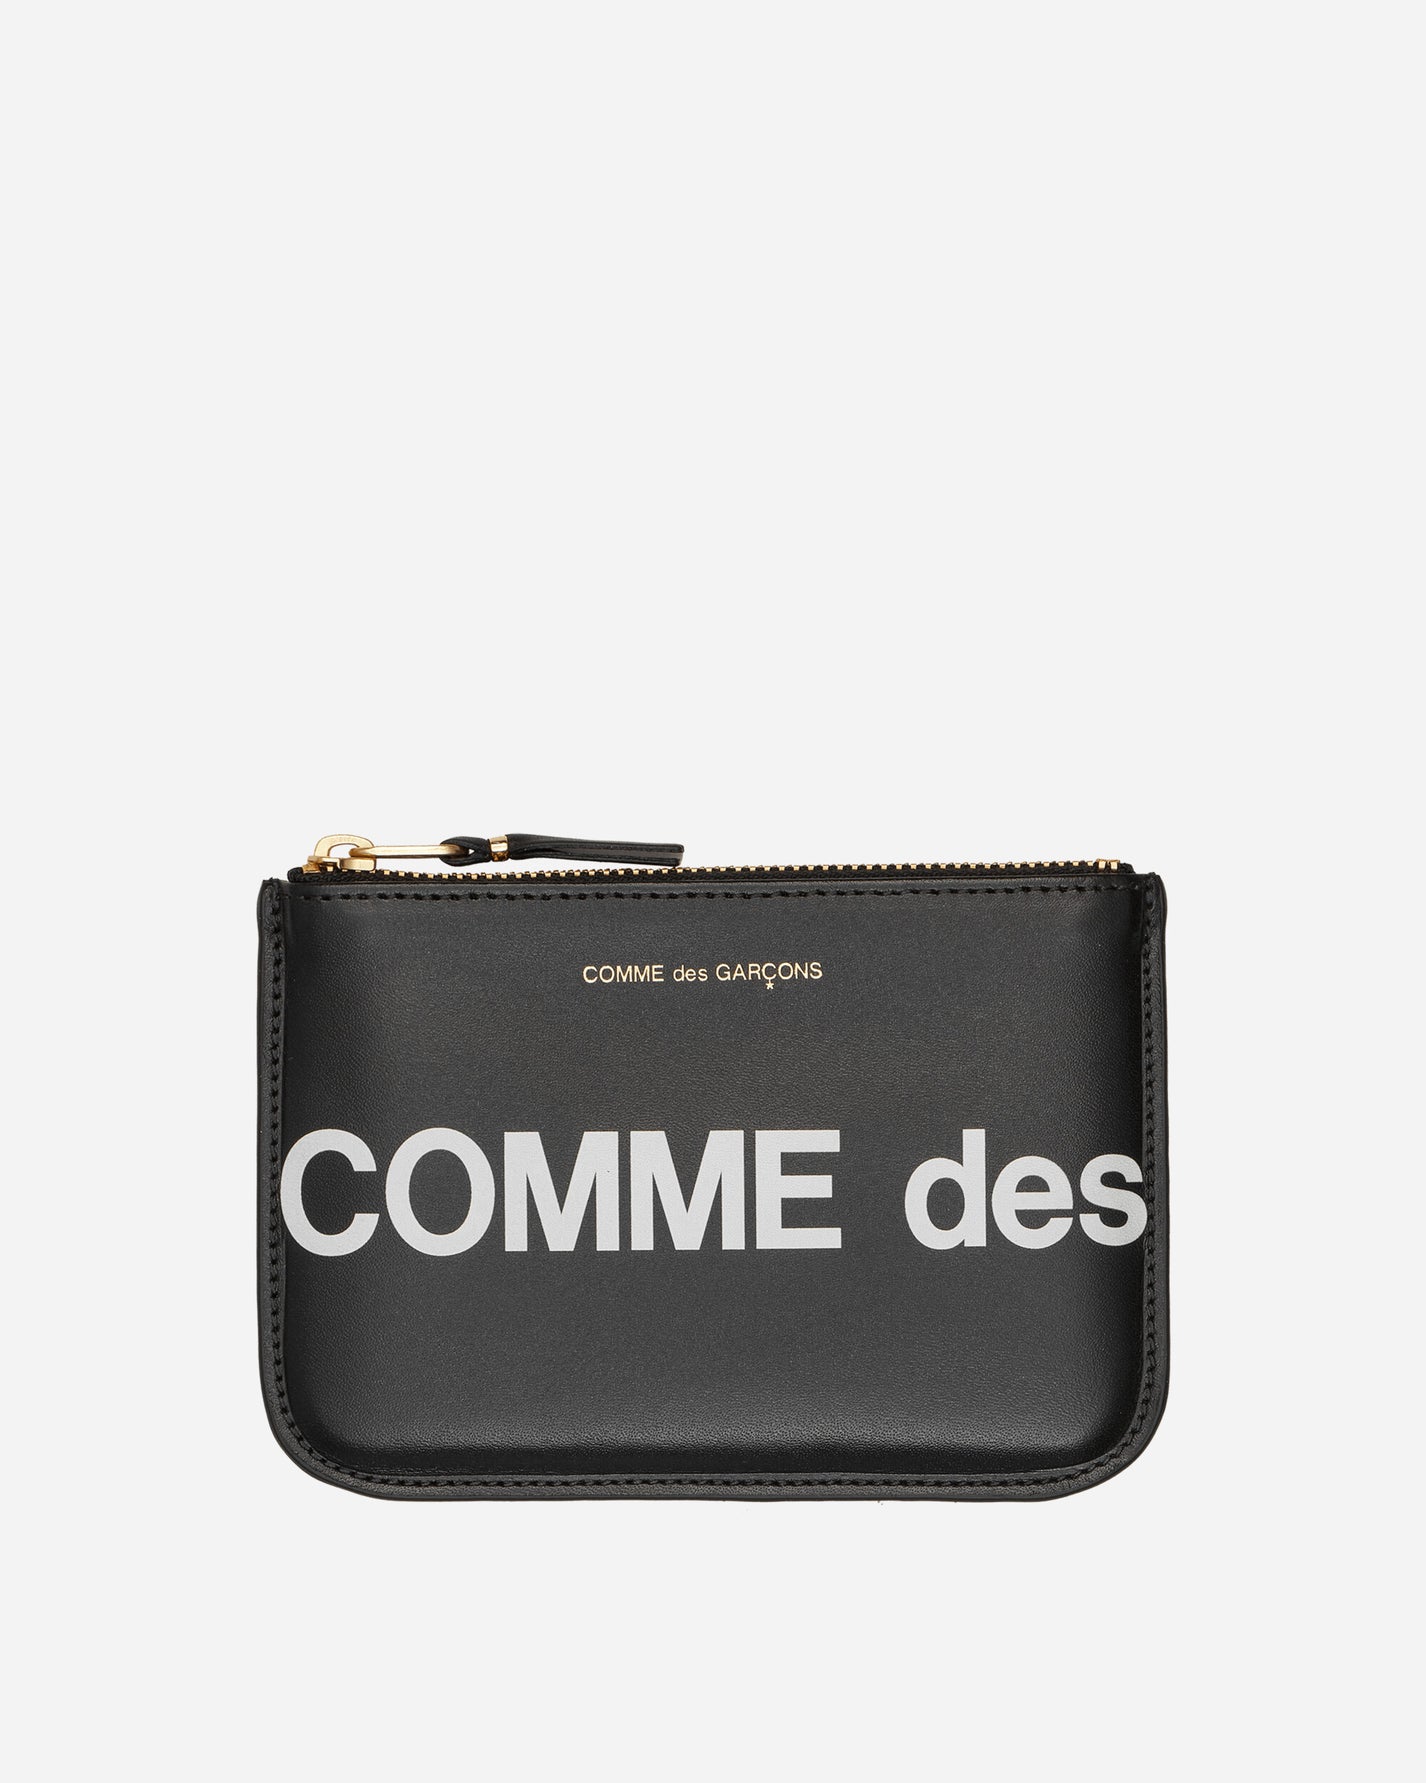 Comme Des Garçons Wallet Wallet/Huge Logo Black Wallets and Cardholders Wallets SA8100HL 1